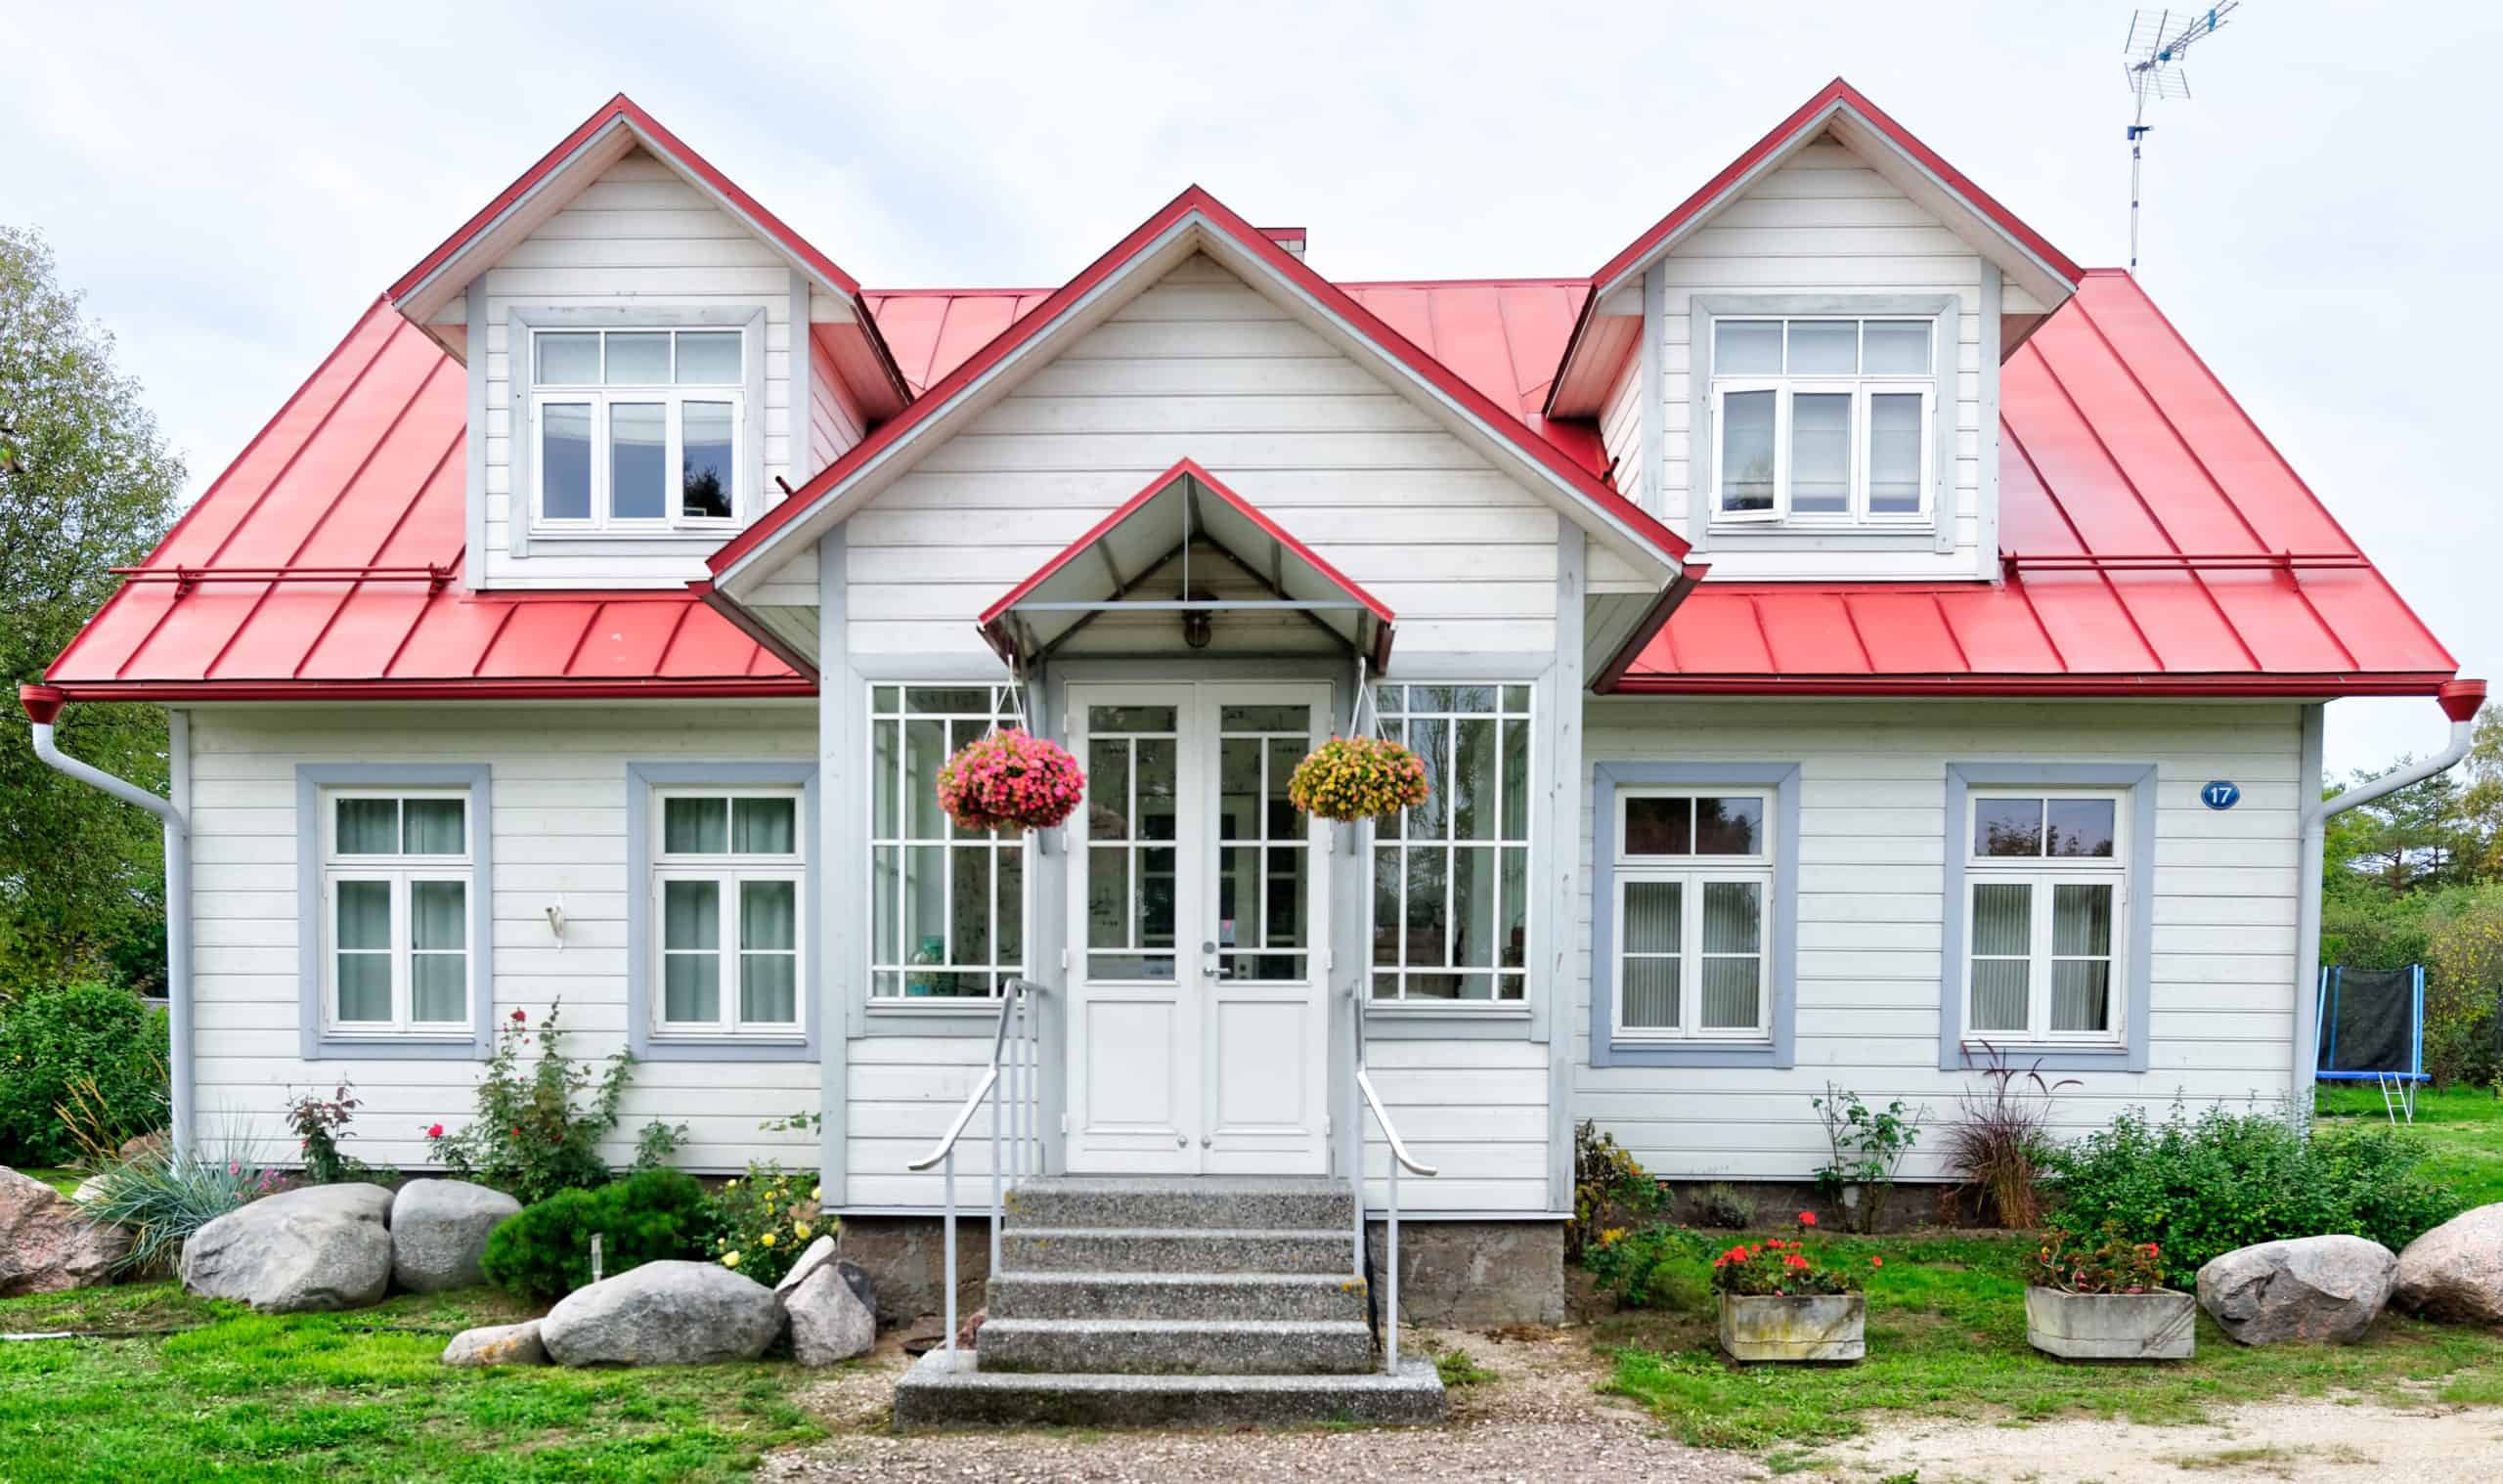 hipoteka - Skandinavija